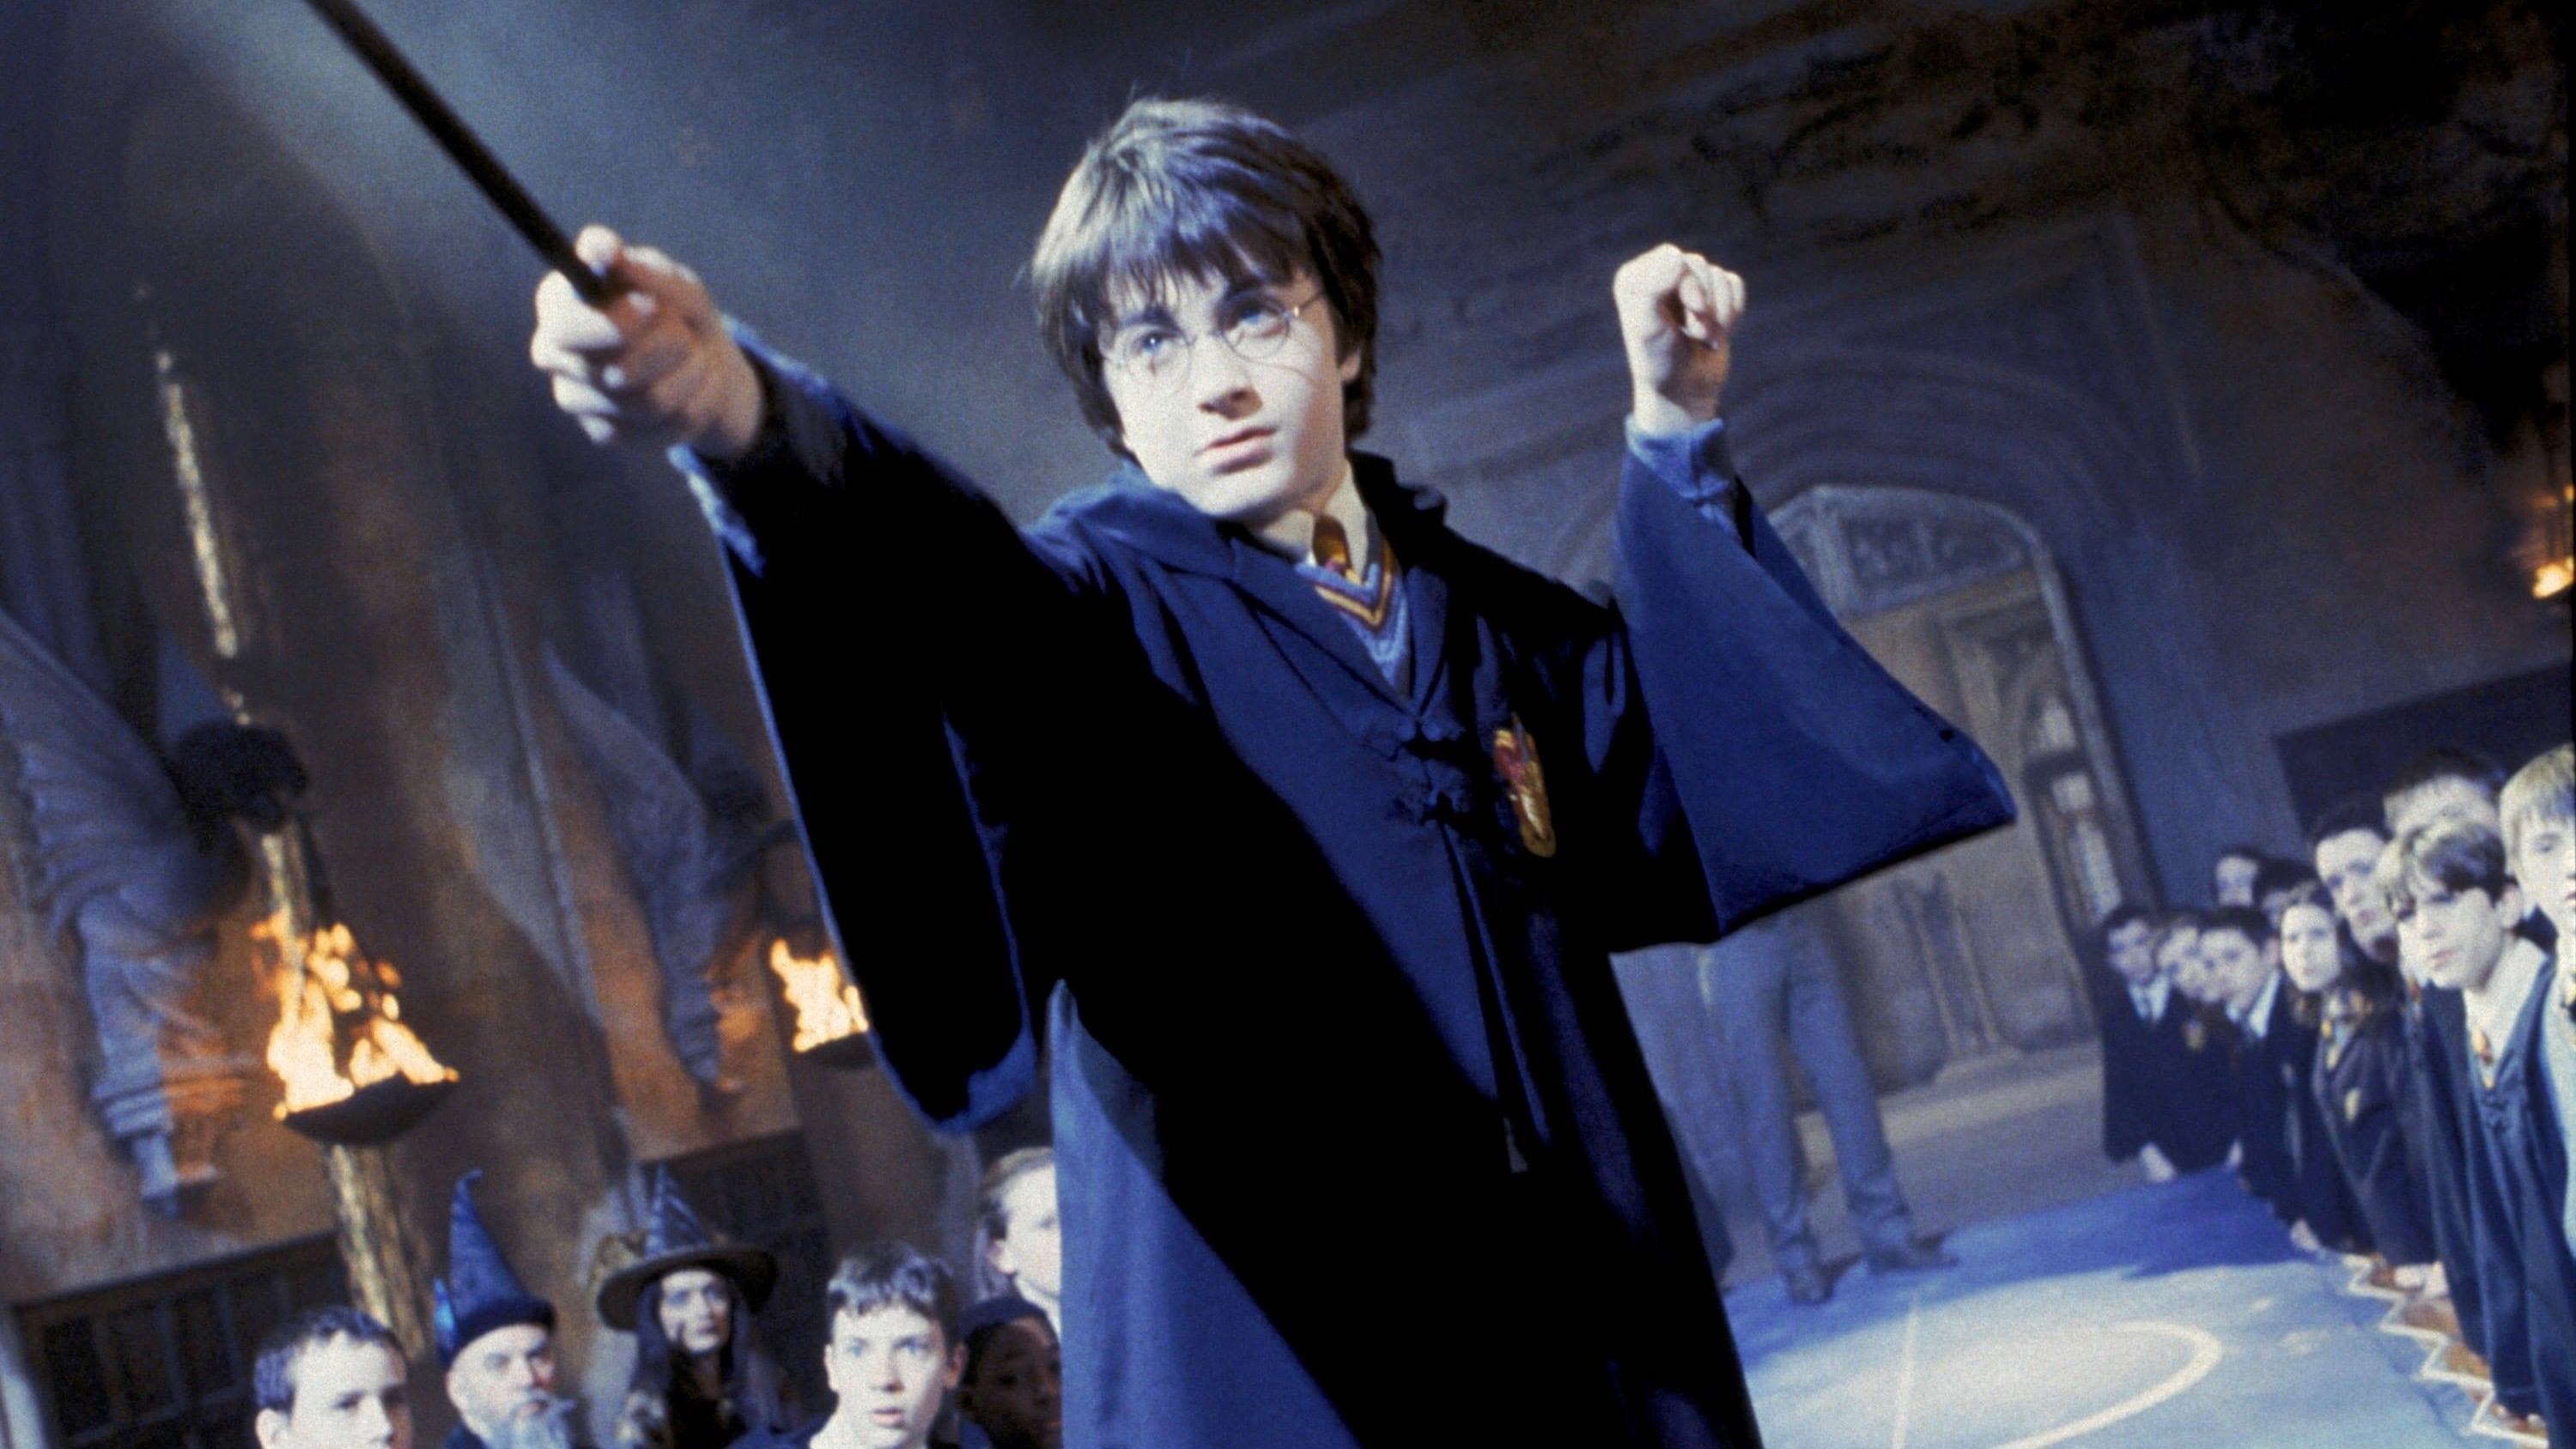 Harry Potter et la Chambre des secrets en Streaming VF